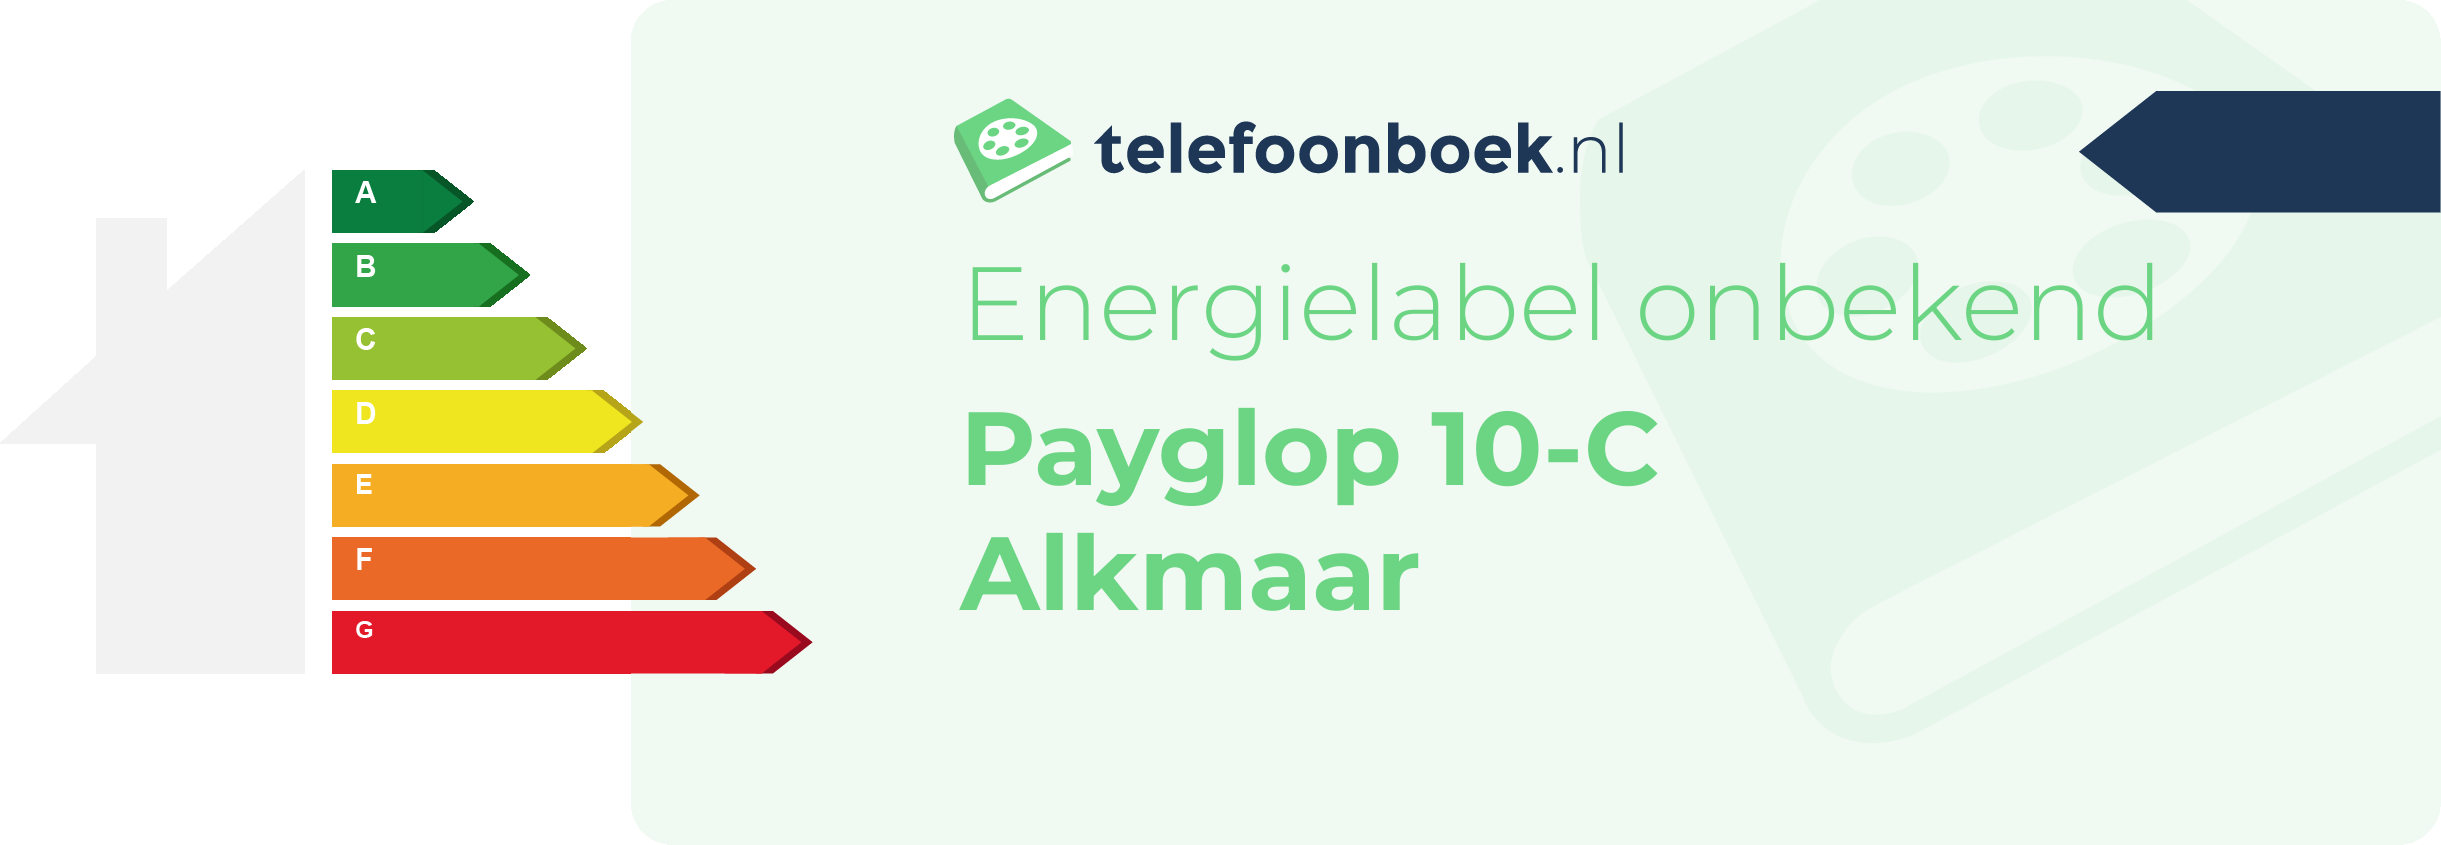 Energielabel Payglop 10-C Alkmaar